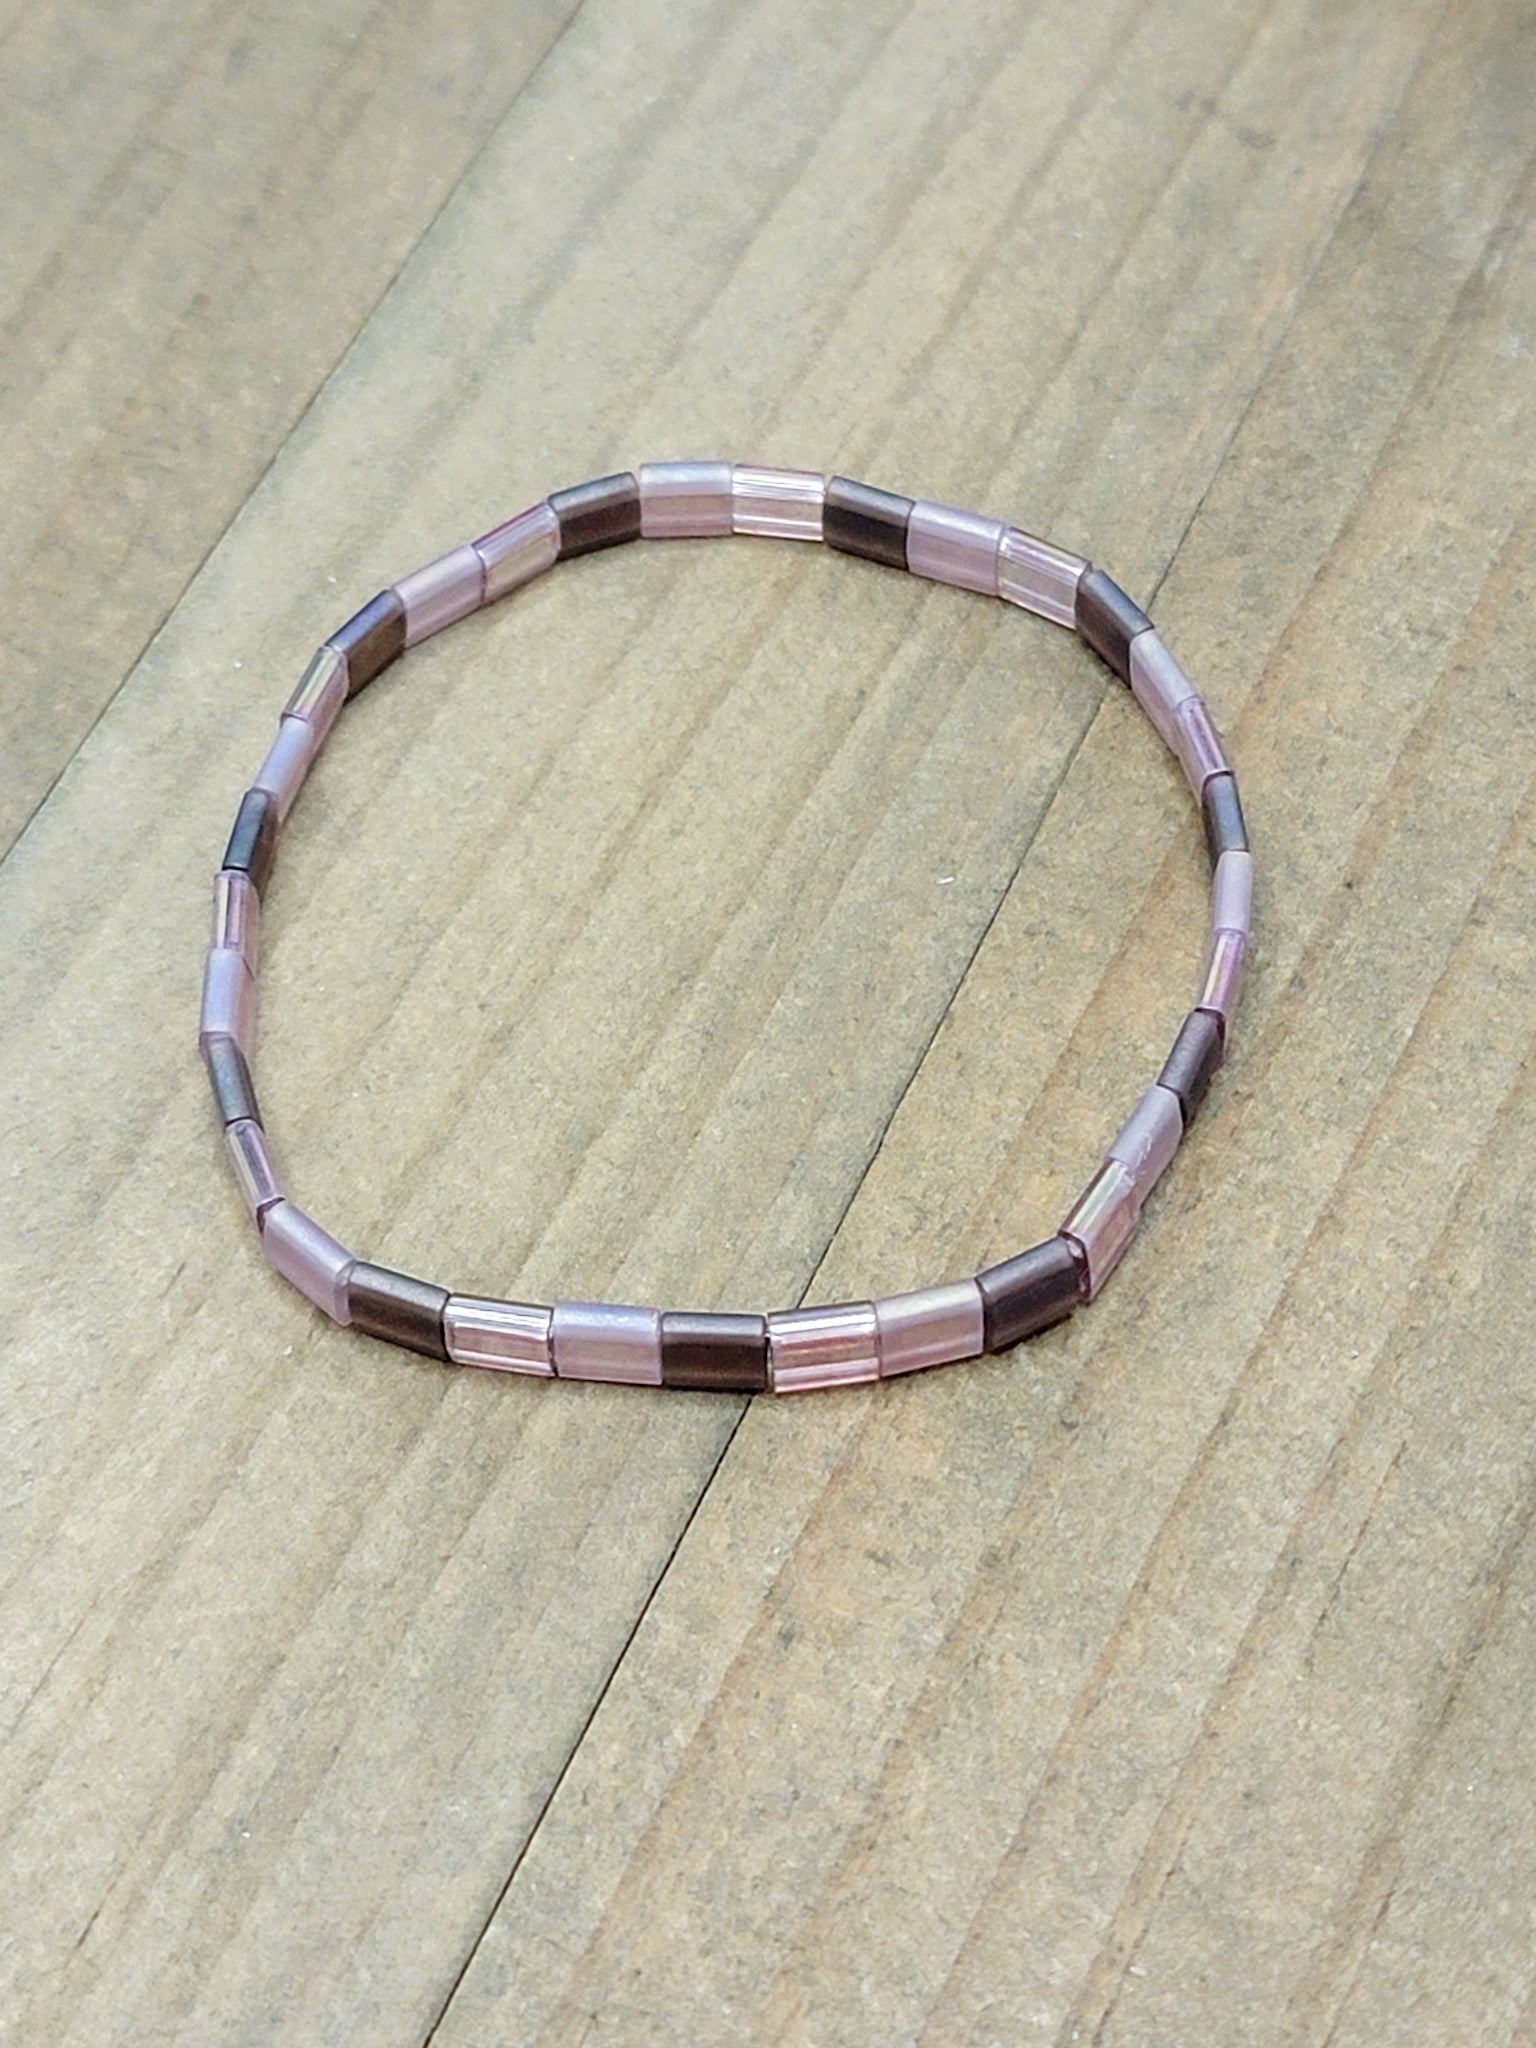 Tila Bead Bracelet-Popular Dainty Beaded Bracelets for Women-Purples